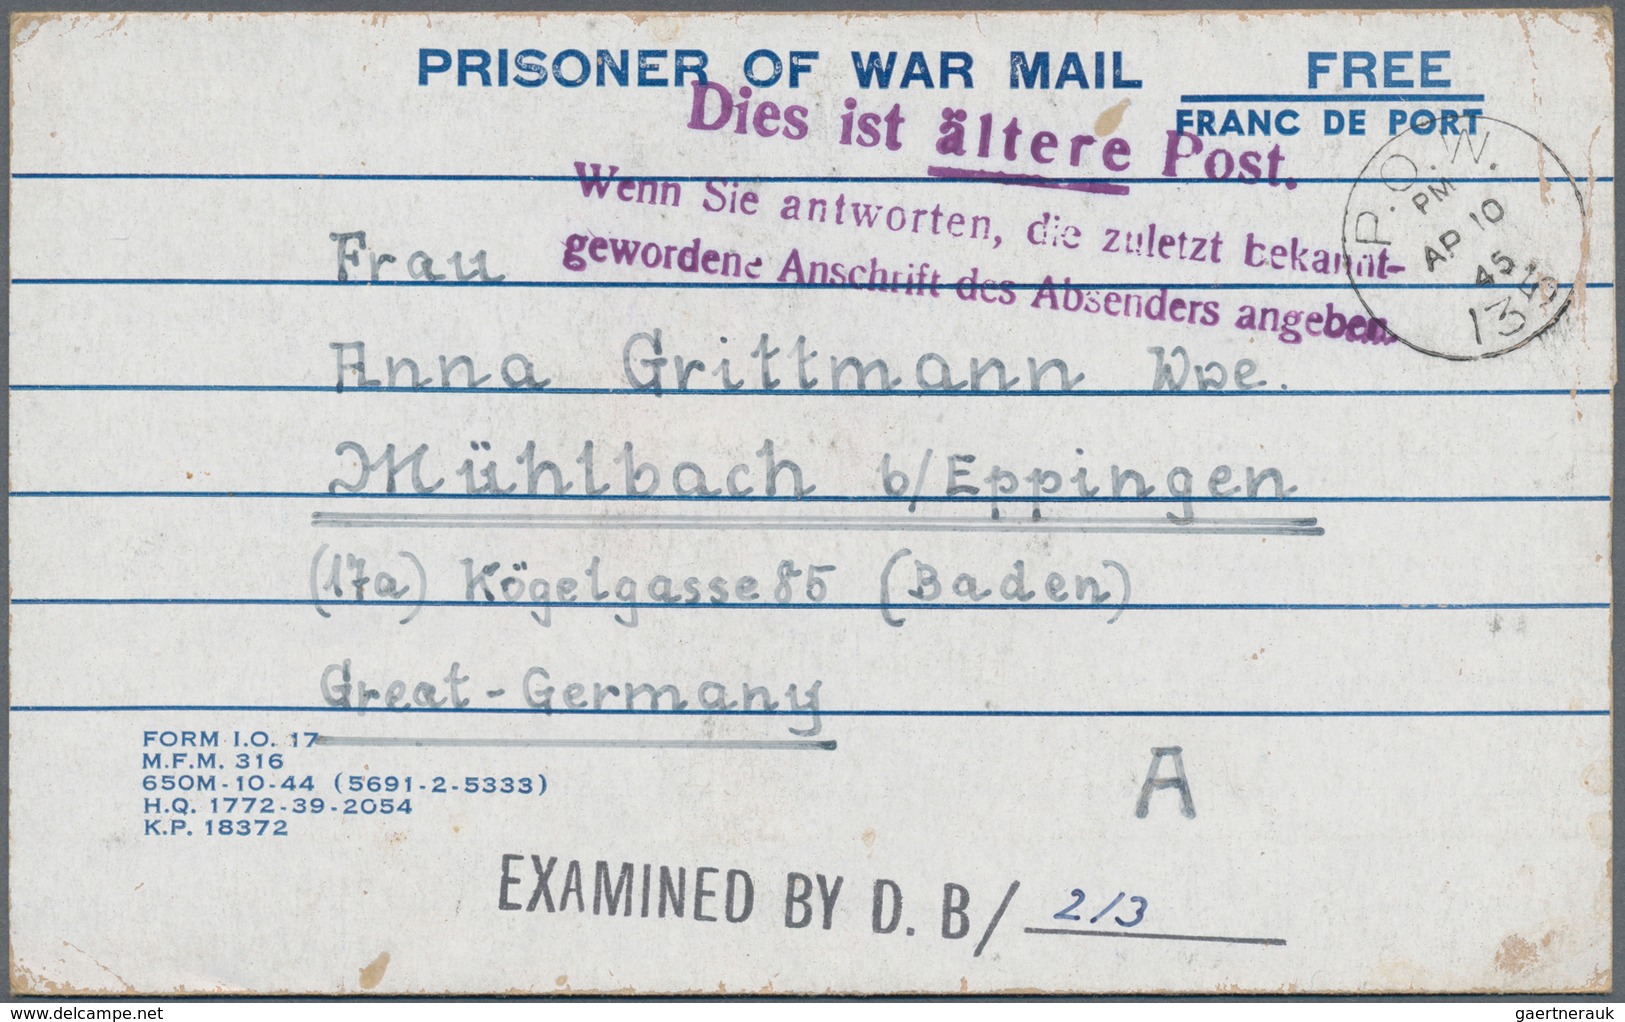 Kriegsgefangenen-Lagerpost: 1942/1947, umfassende Korrespondenz eines deutschen Kriegsgefangenen, de